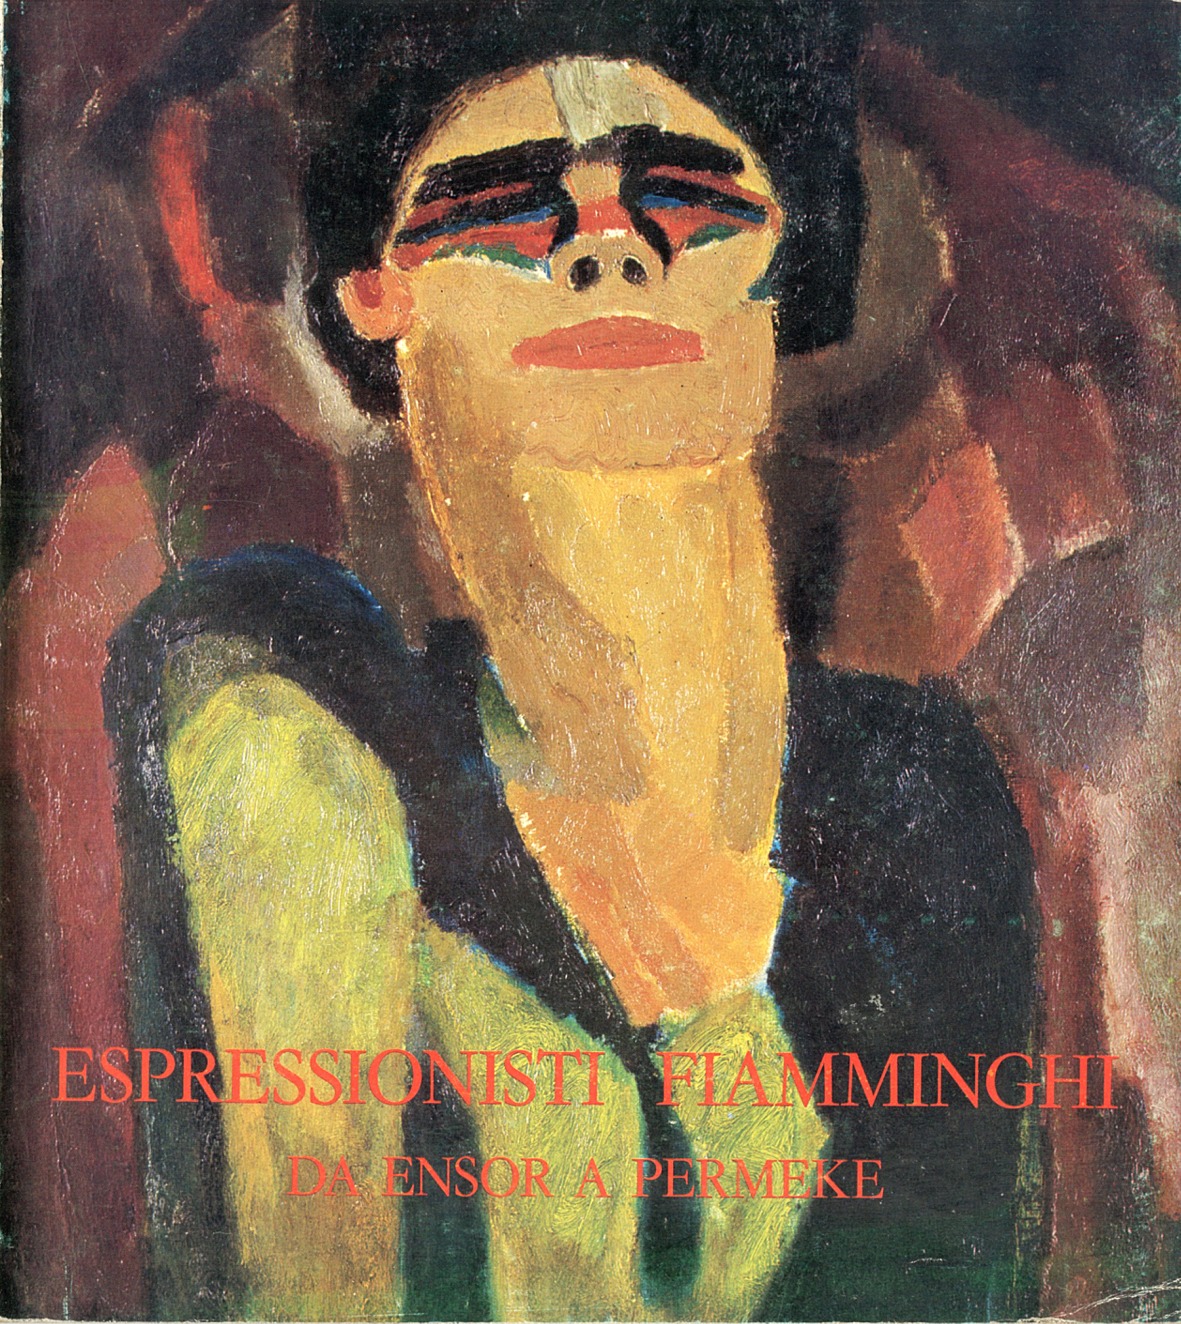 Espressionisti fiamminghi